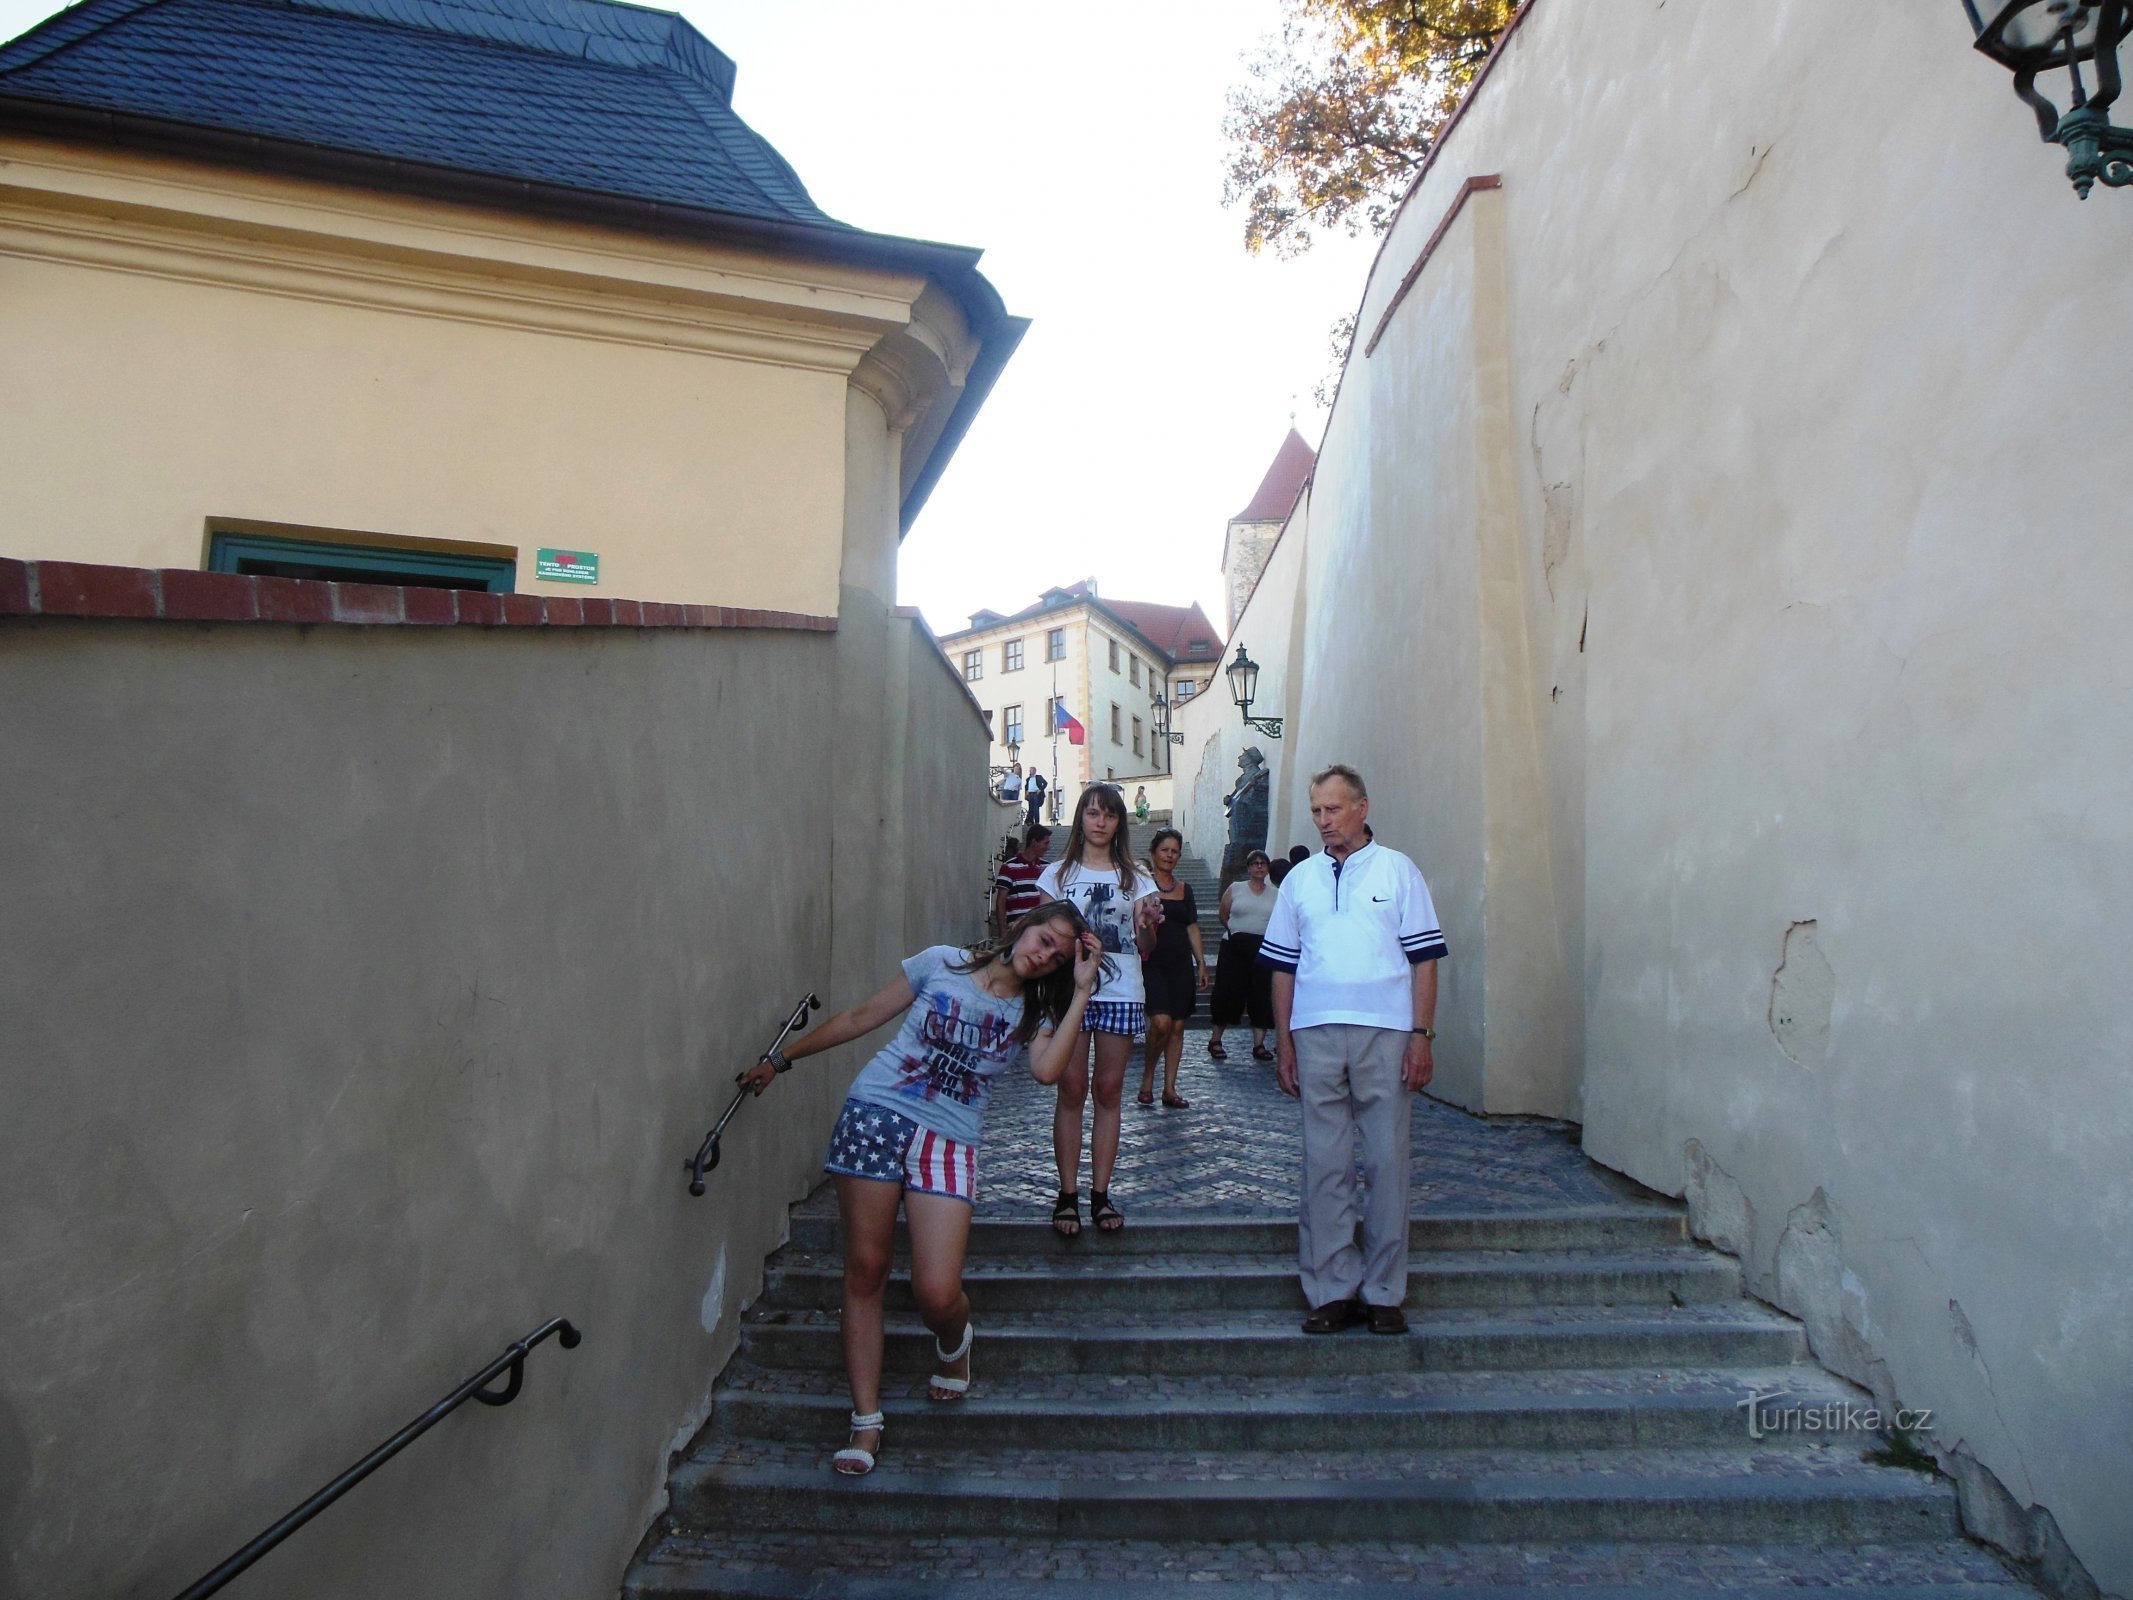 Sus pe scările vechiului castel, sus pe scările de piatră... așa cum a cântat Waldemar Matuška